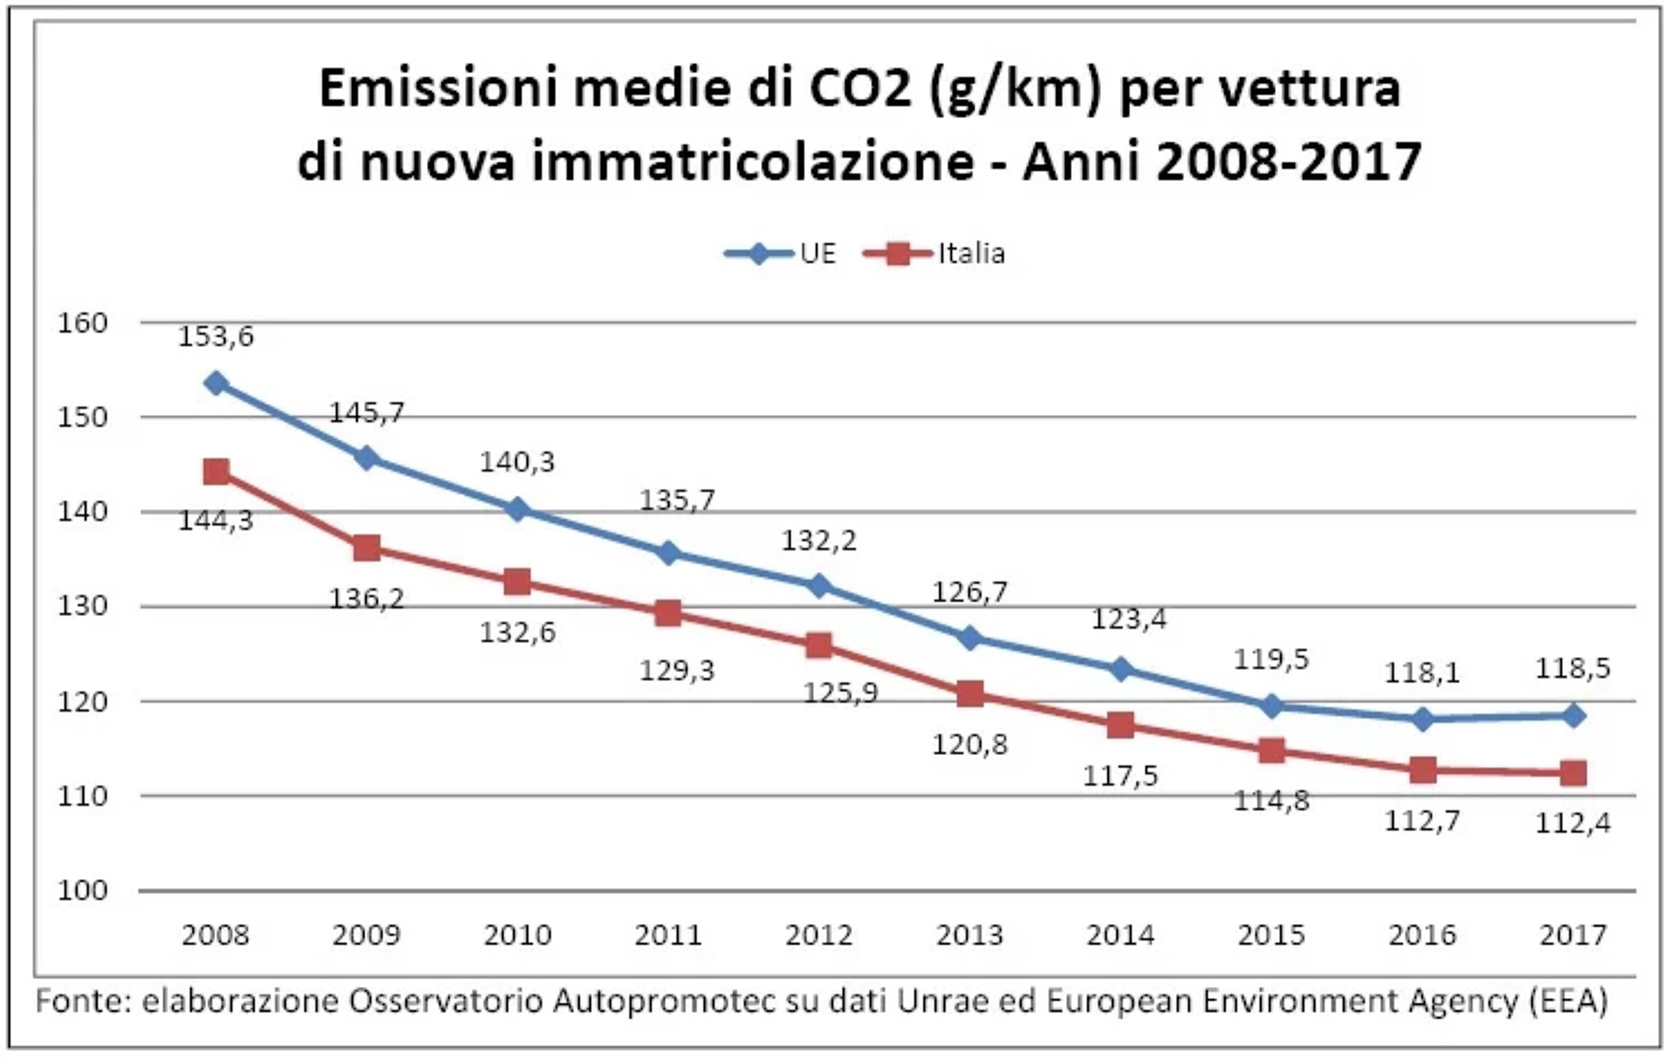 emissioni-CO2-08-17